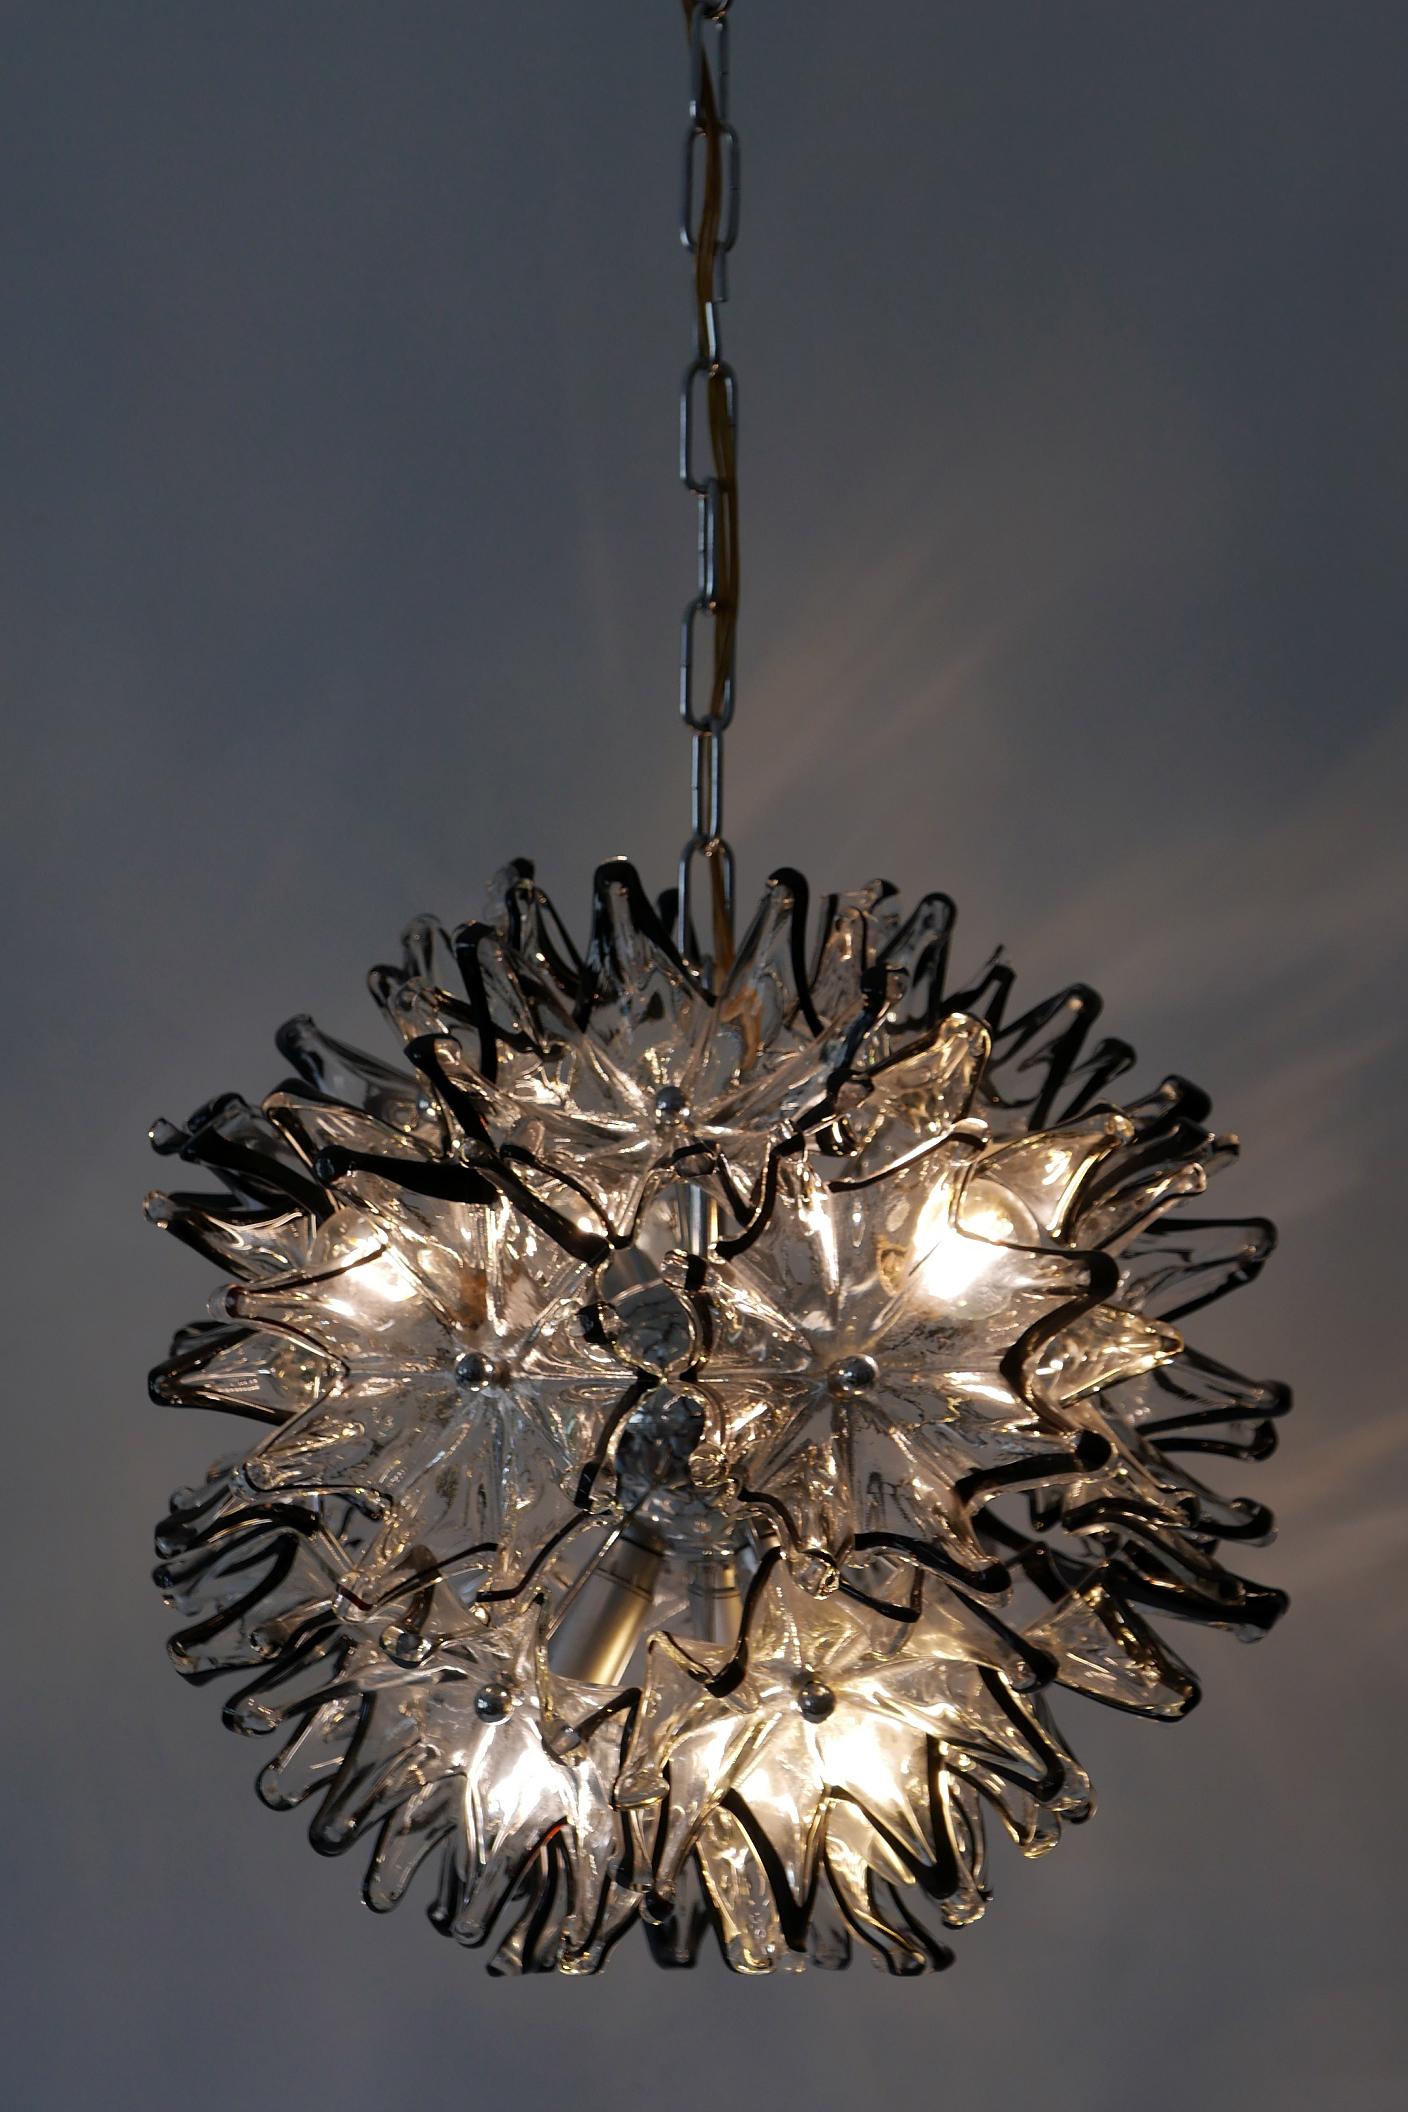 Superbe, très décoratif et élégant lustre ou lampe suspendue en verre de Murano à 6 flammes 'Dandelion', datant du milieu du siècle dernier. Fabriqué probablement par VeArt, dans les années 1960 en Italie.

Réalisé avec des éléments en verre de